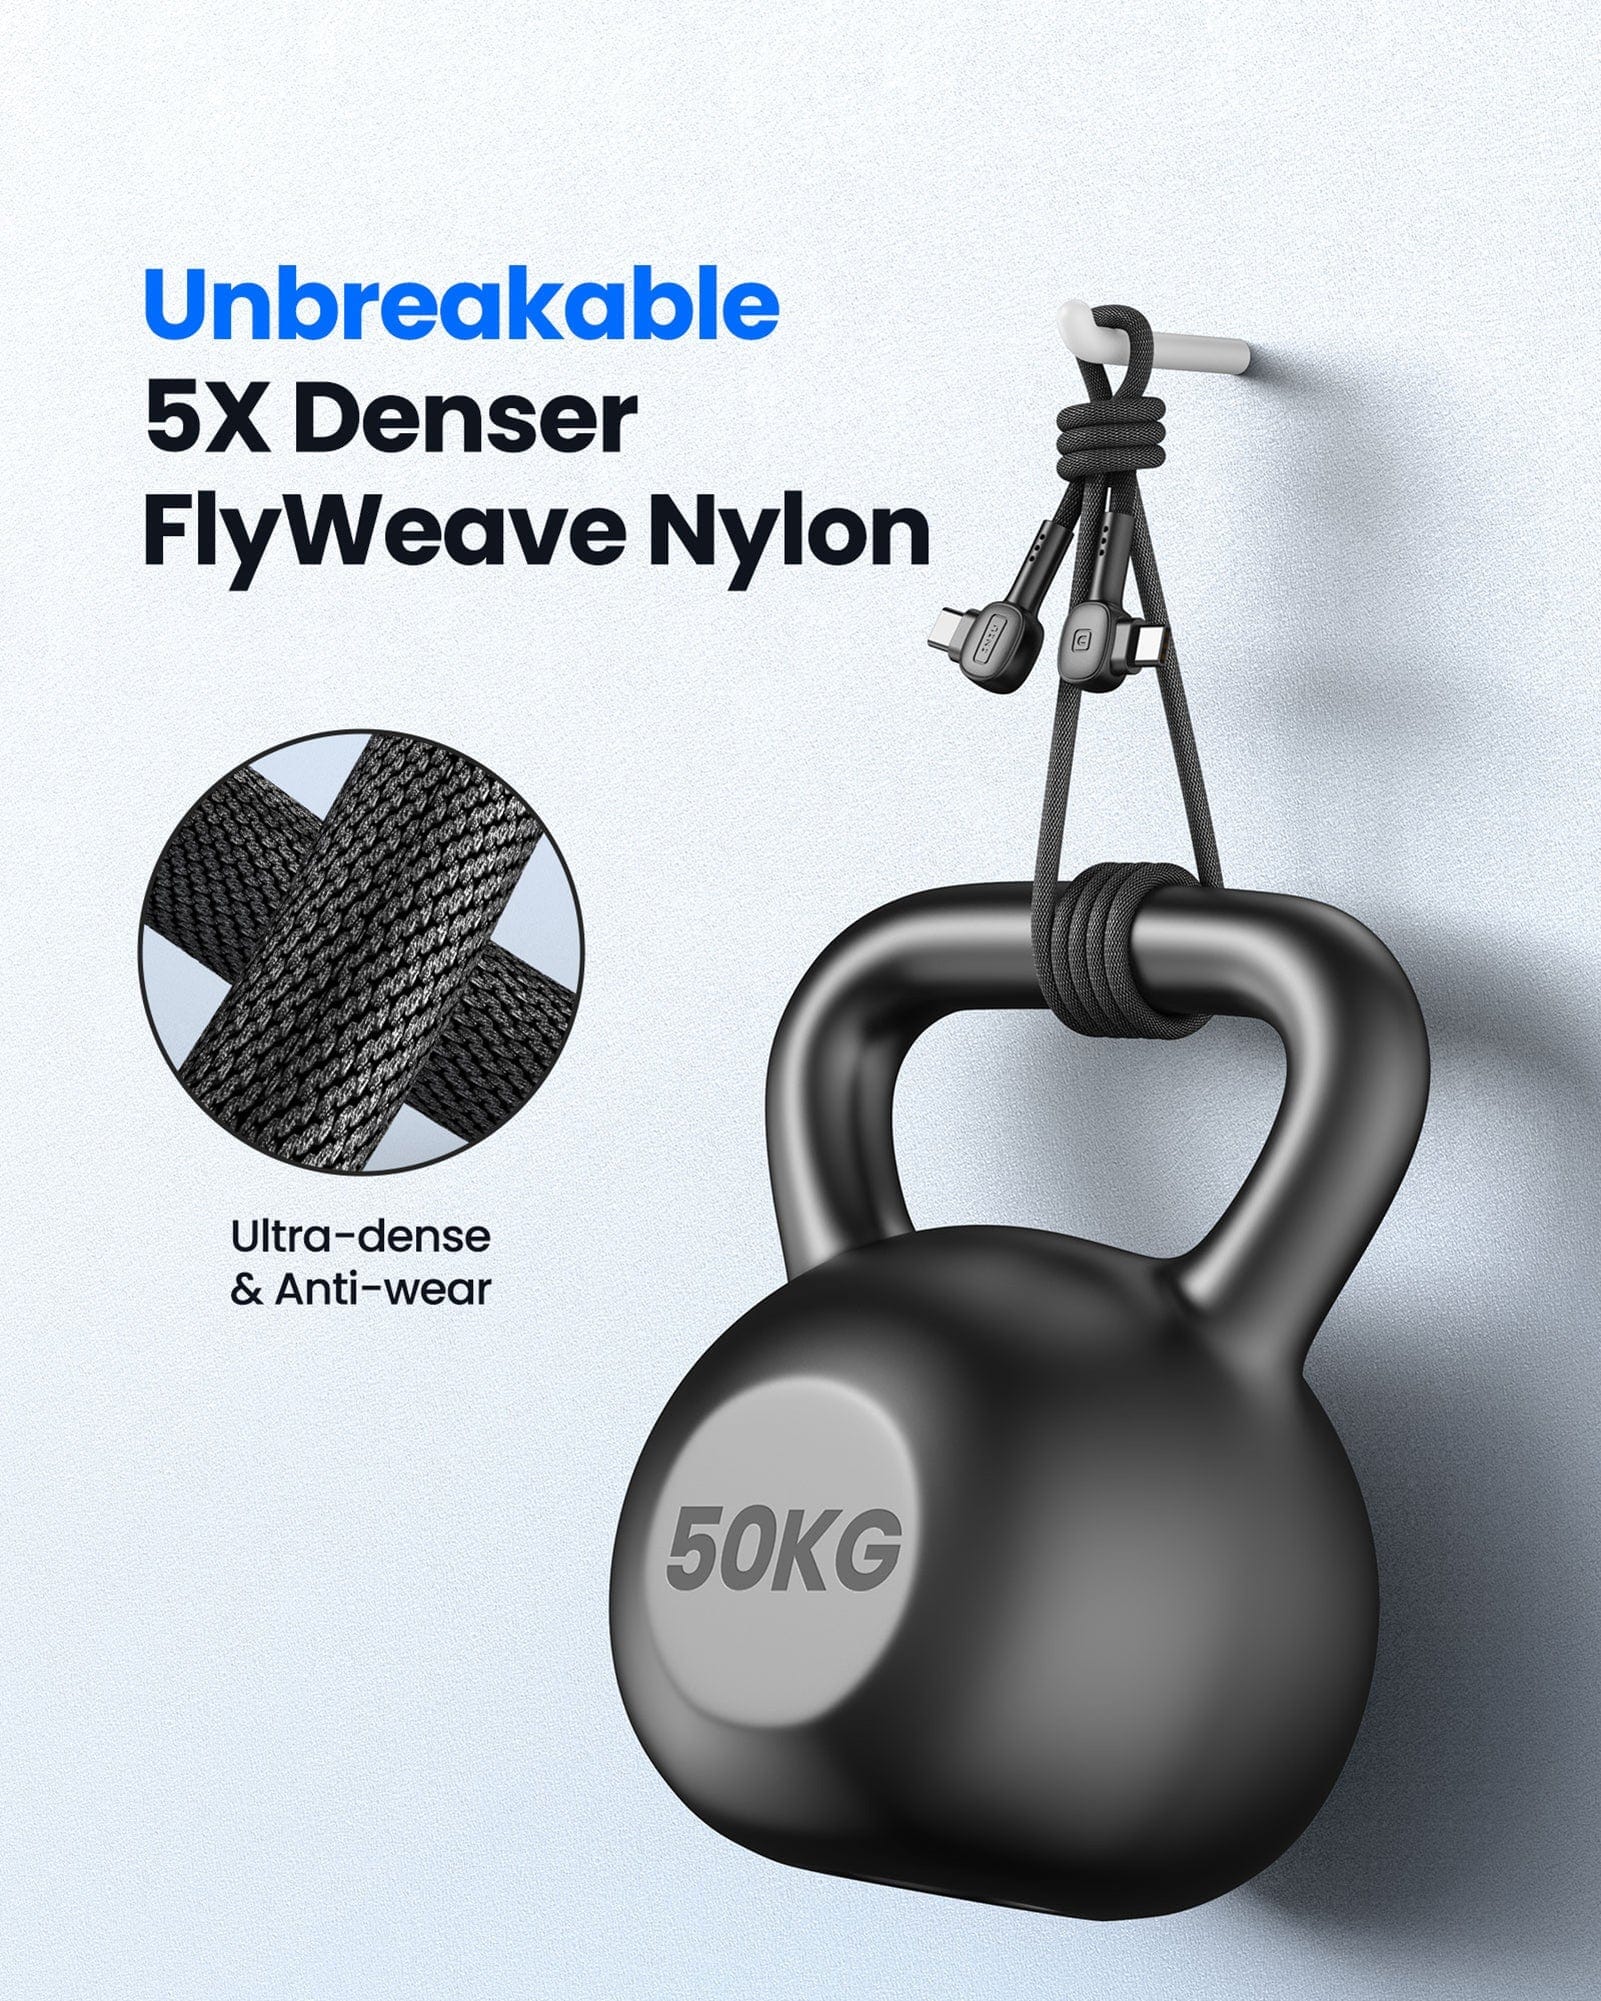 Unbreakable 5X Denser Flyweave Nylon